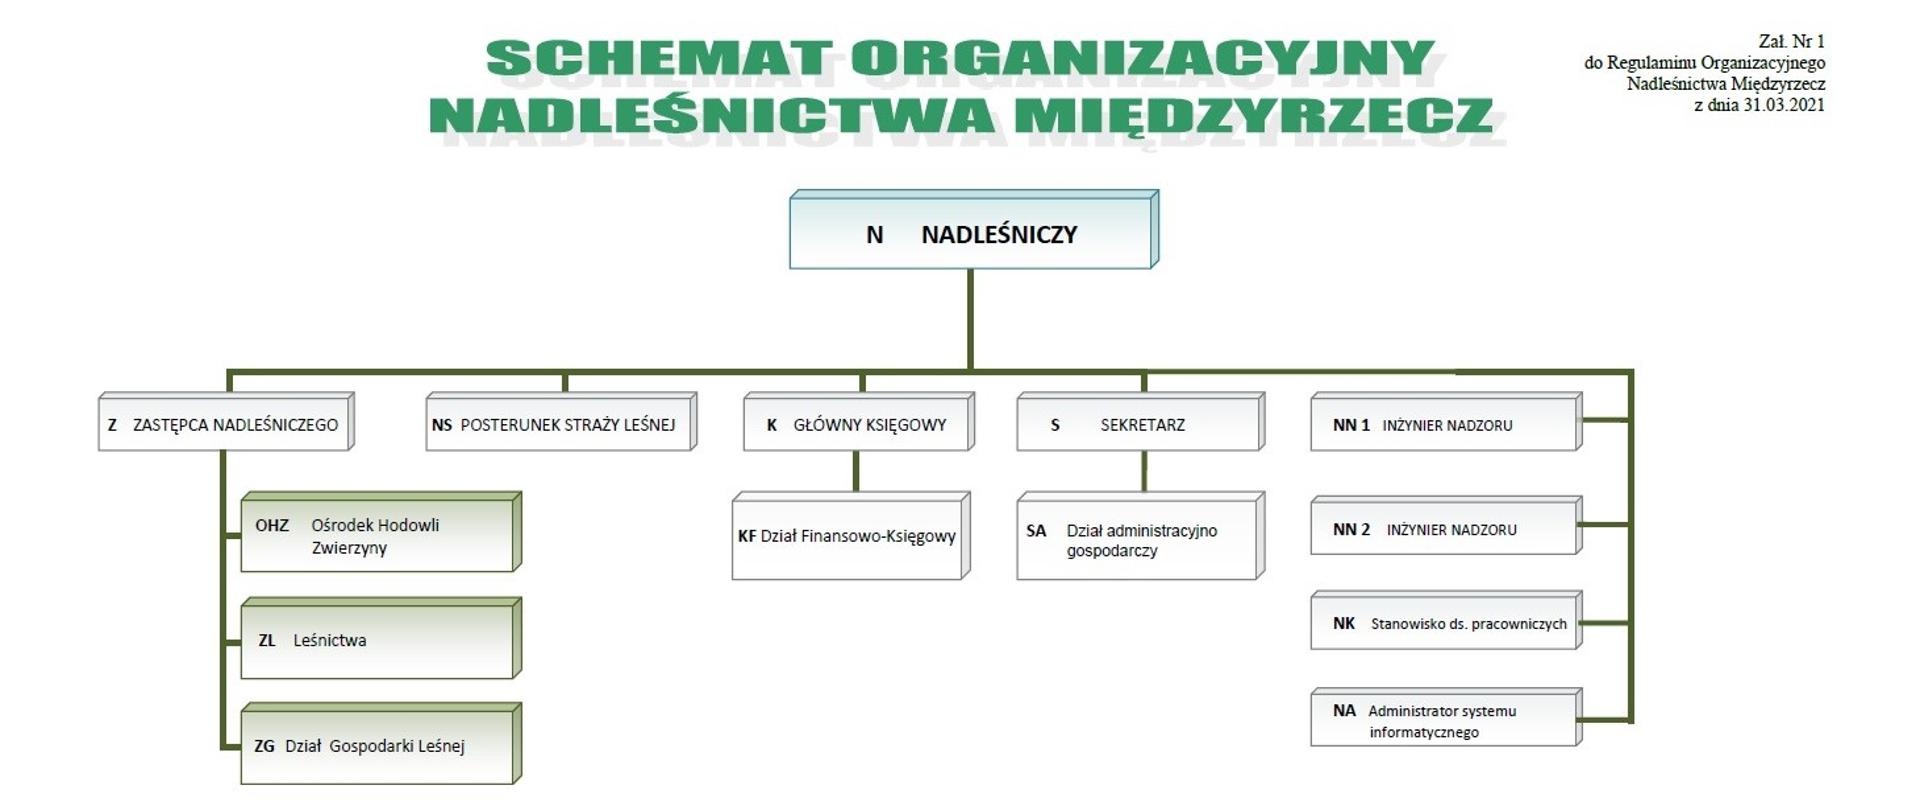 Schemat organizacyjny Nadleśnictwa Międzyrzecz